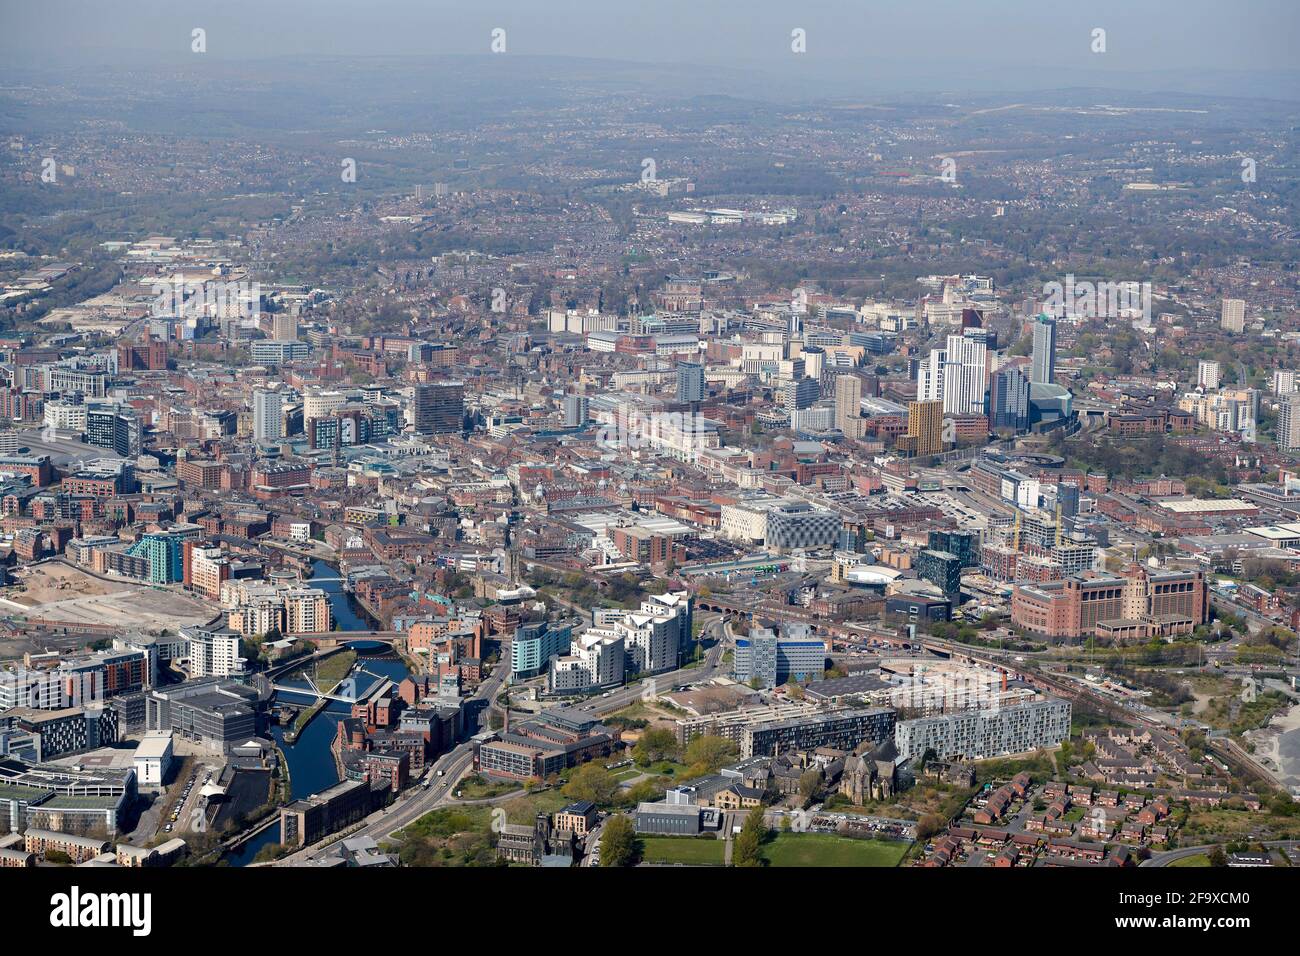 Eine Luftaufnahme des Leeds City Centre, West Yorkshire, Nordengland, Großbritannien, aus dem Osten mit Blick auf den Fluss Aire zeigt neue Entwicklung am Flussufer Stockfoto